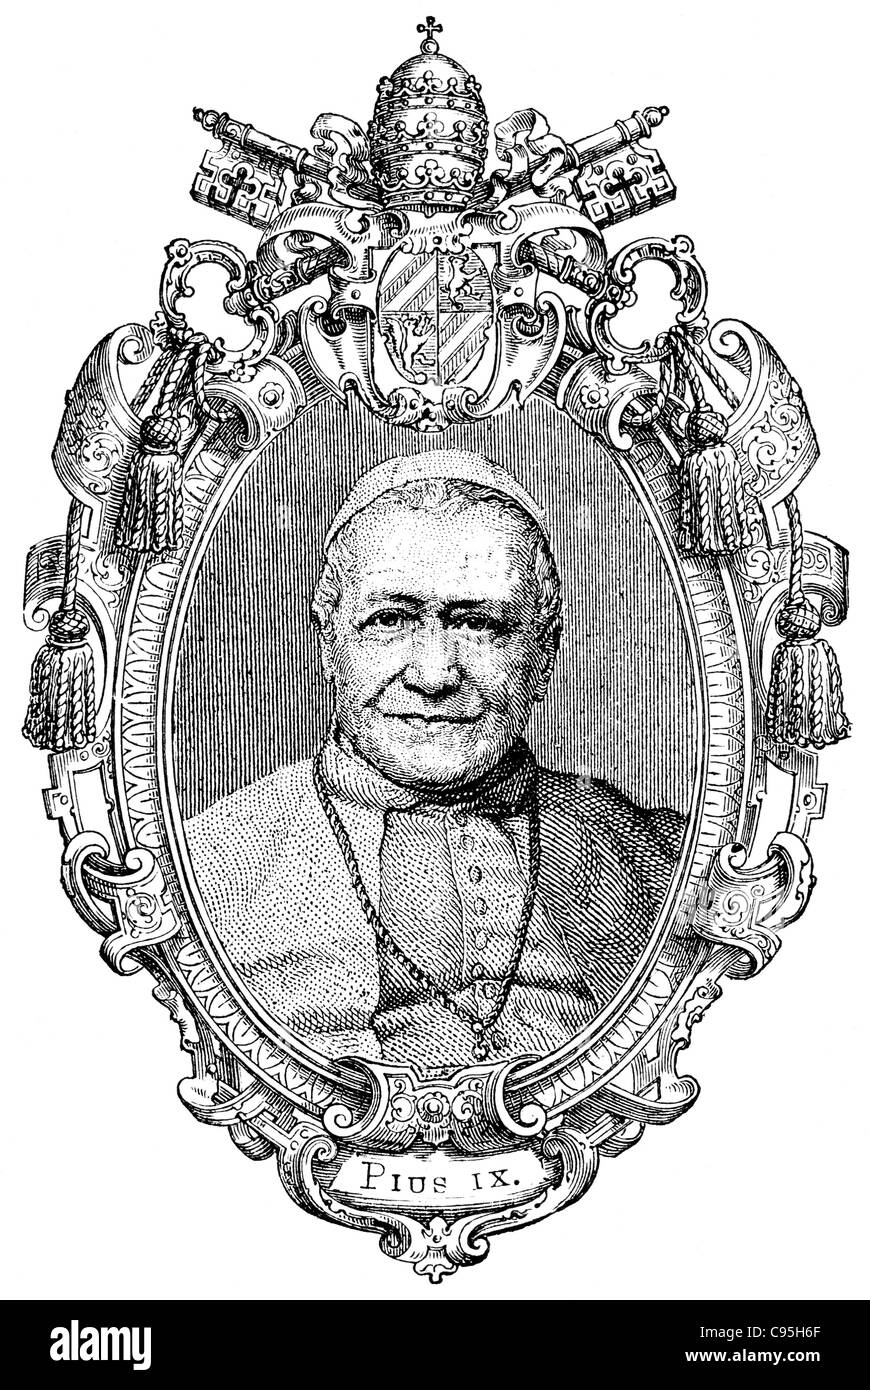 Alte Stiche. Zeigt der selige Papst Pius IX. Das Buch "History of the Church", 1880 Stockfoto